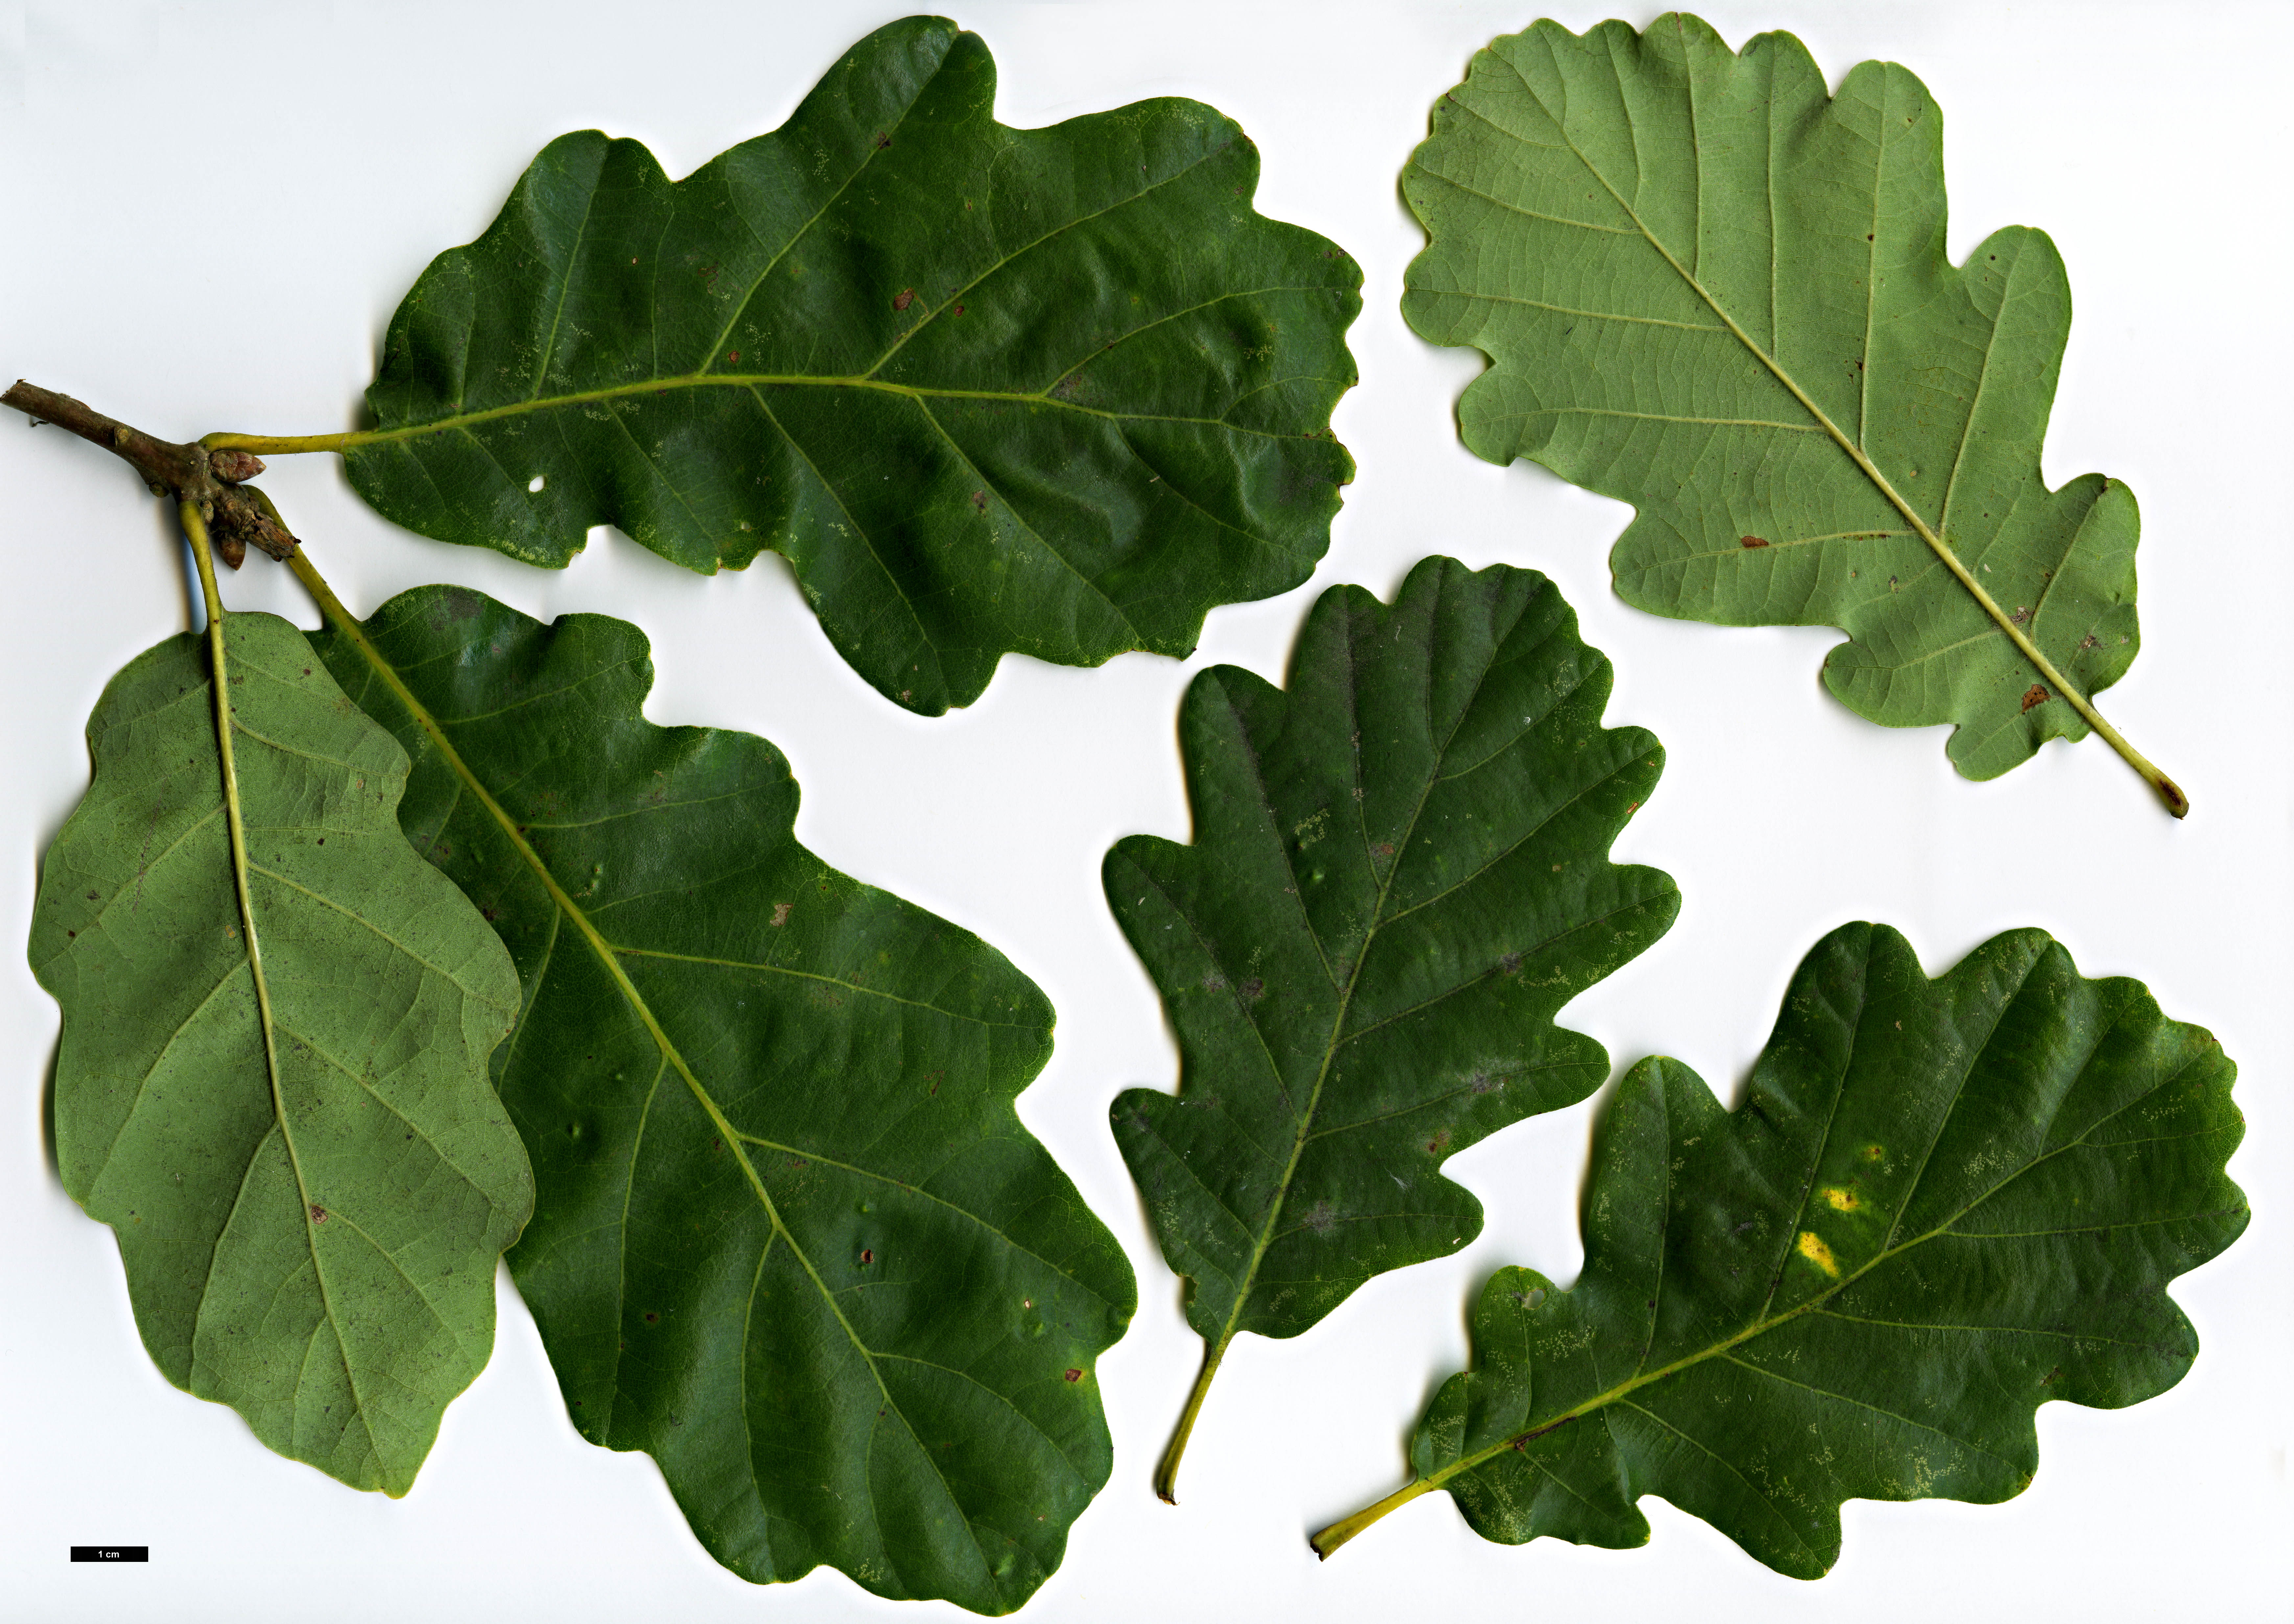 High resolution image: Family: Fagaceae - Genus: Quercus - Taxon: petraea - SpeciesSub: 'Spessart'